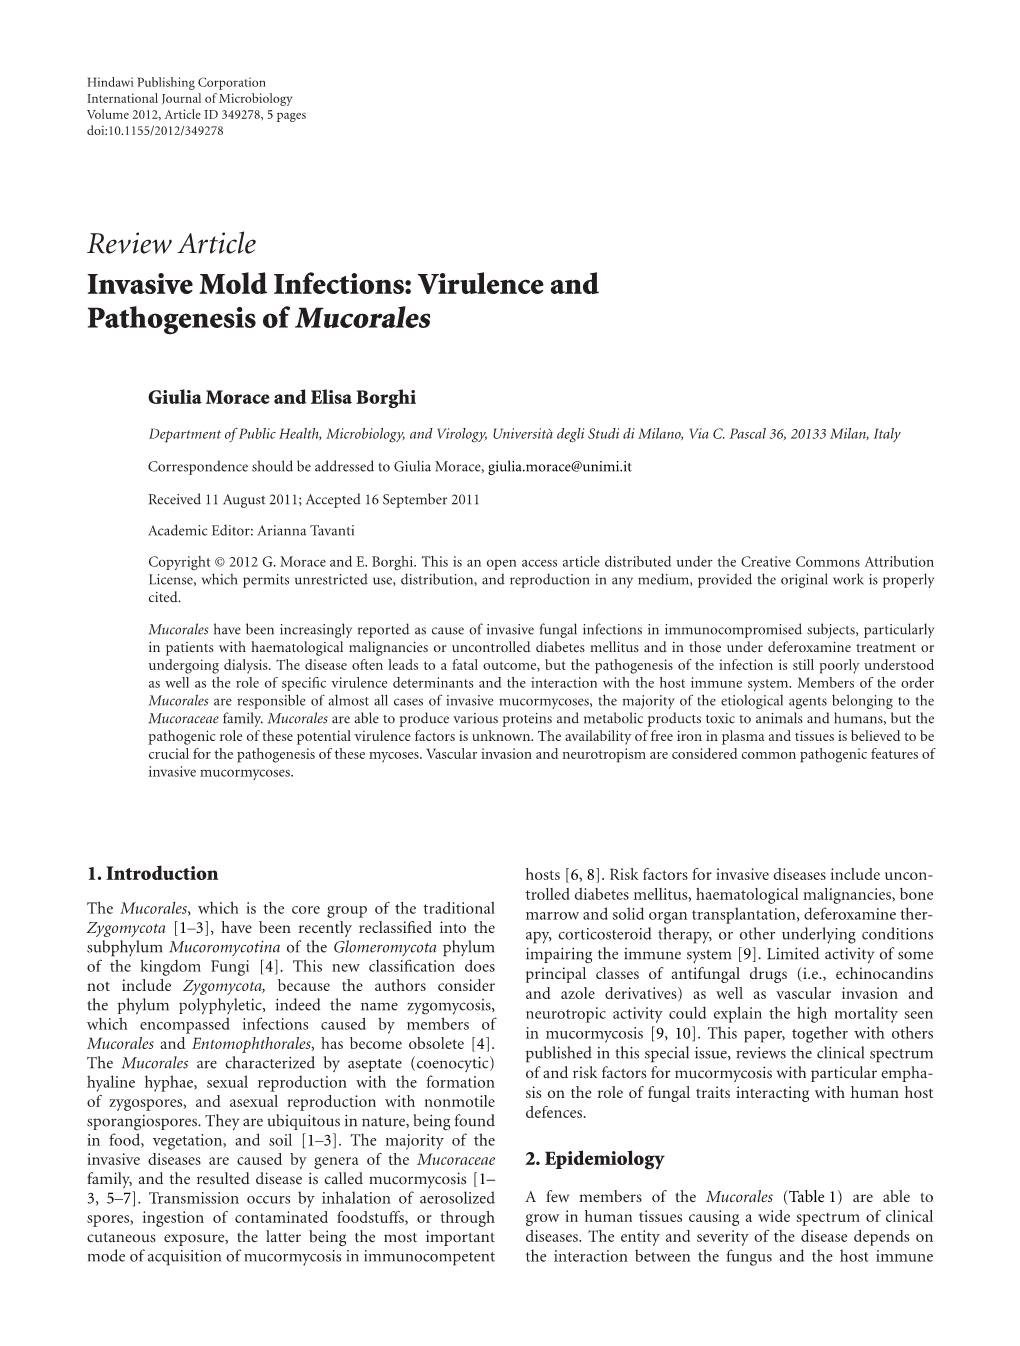 Virulence and Pathogenesis of Mucorales